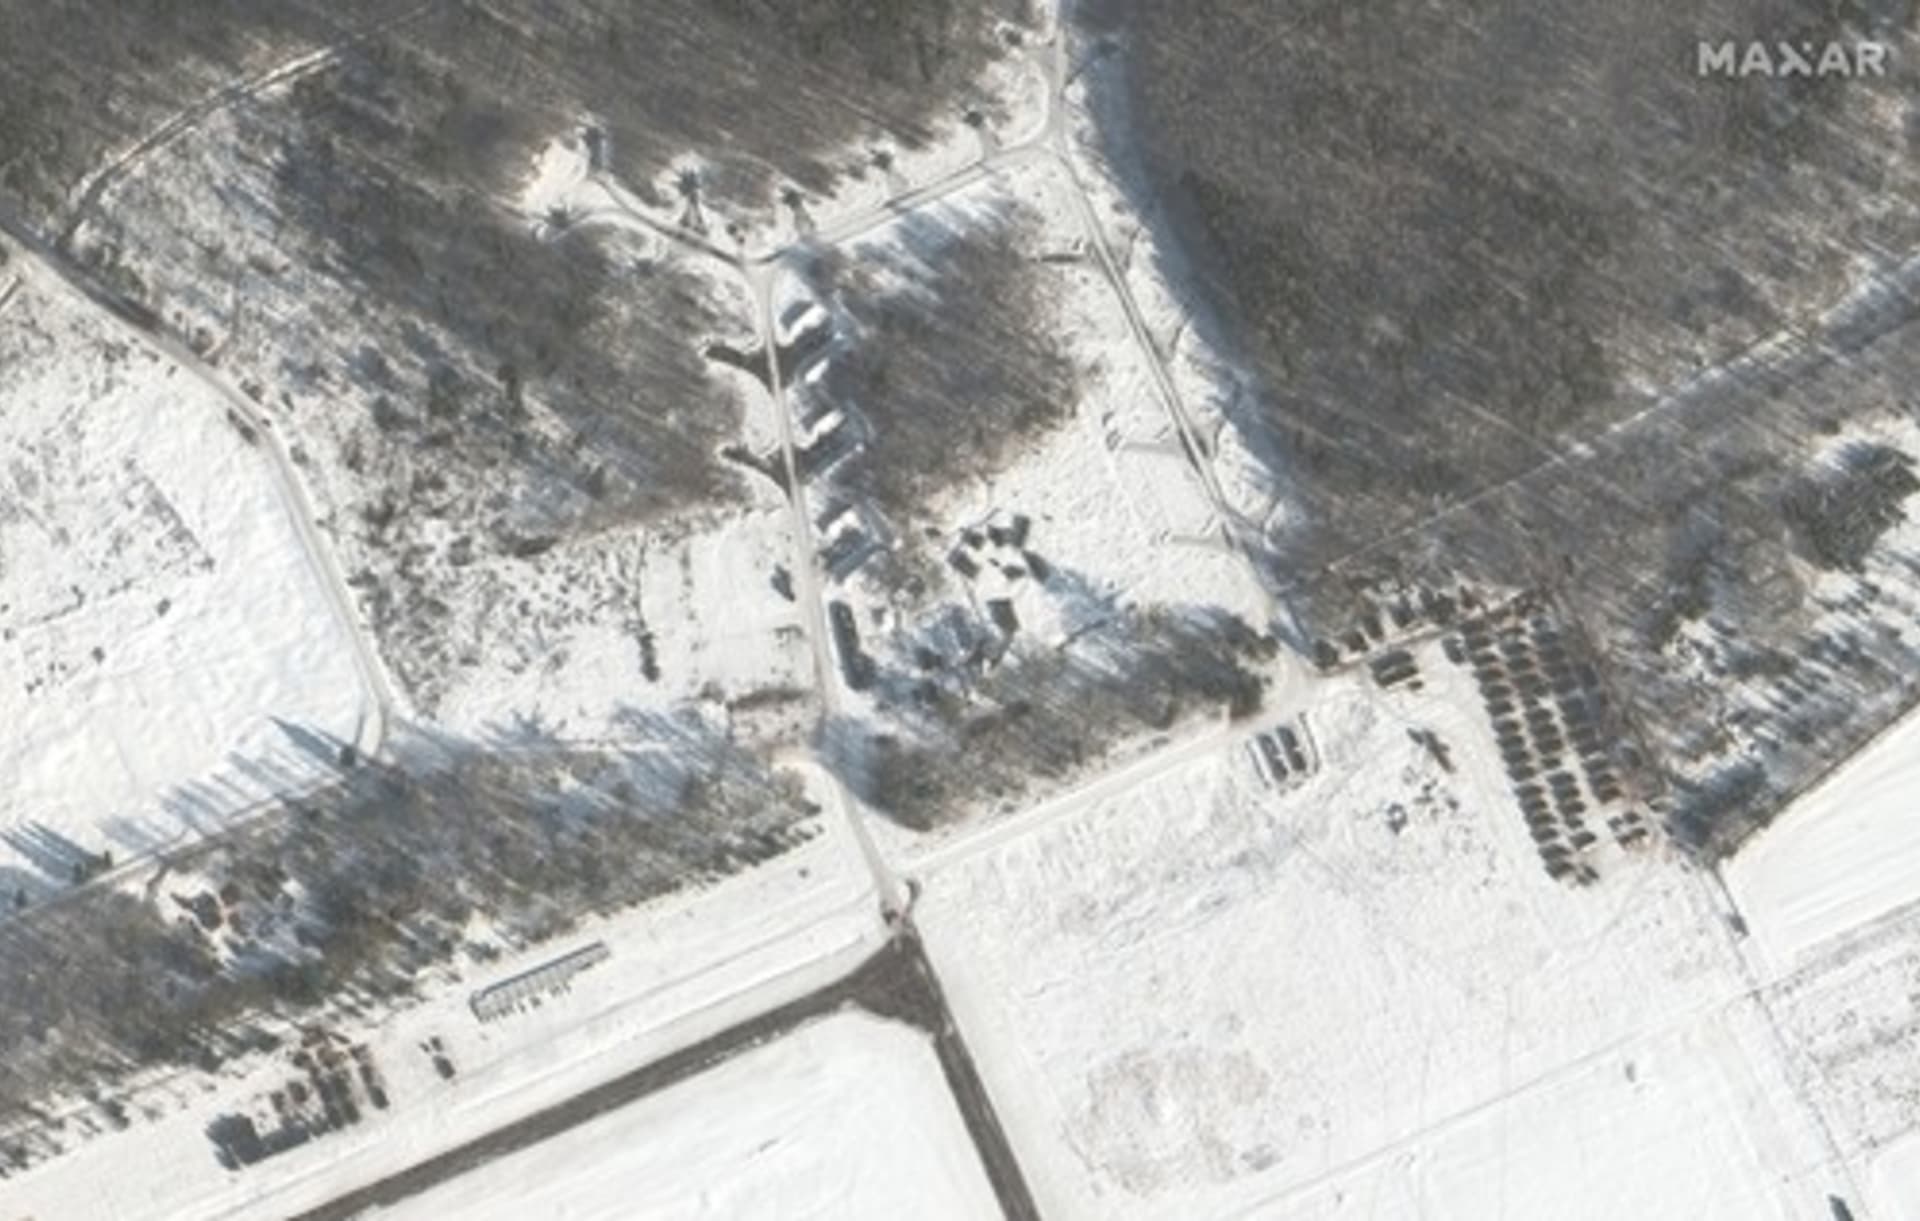 Satelitní snímek společnosti Maxar Technologies pořízený 4. února ukazuje bojová letadla, vojenské stany a zásoby na letecké základně Luniněc v Bělorusku